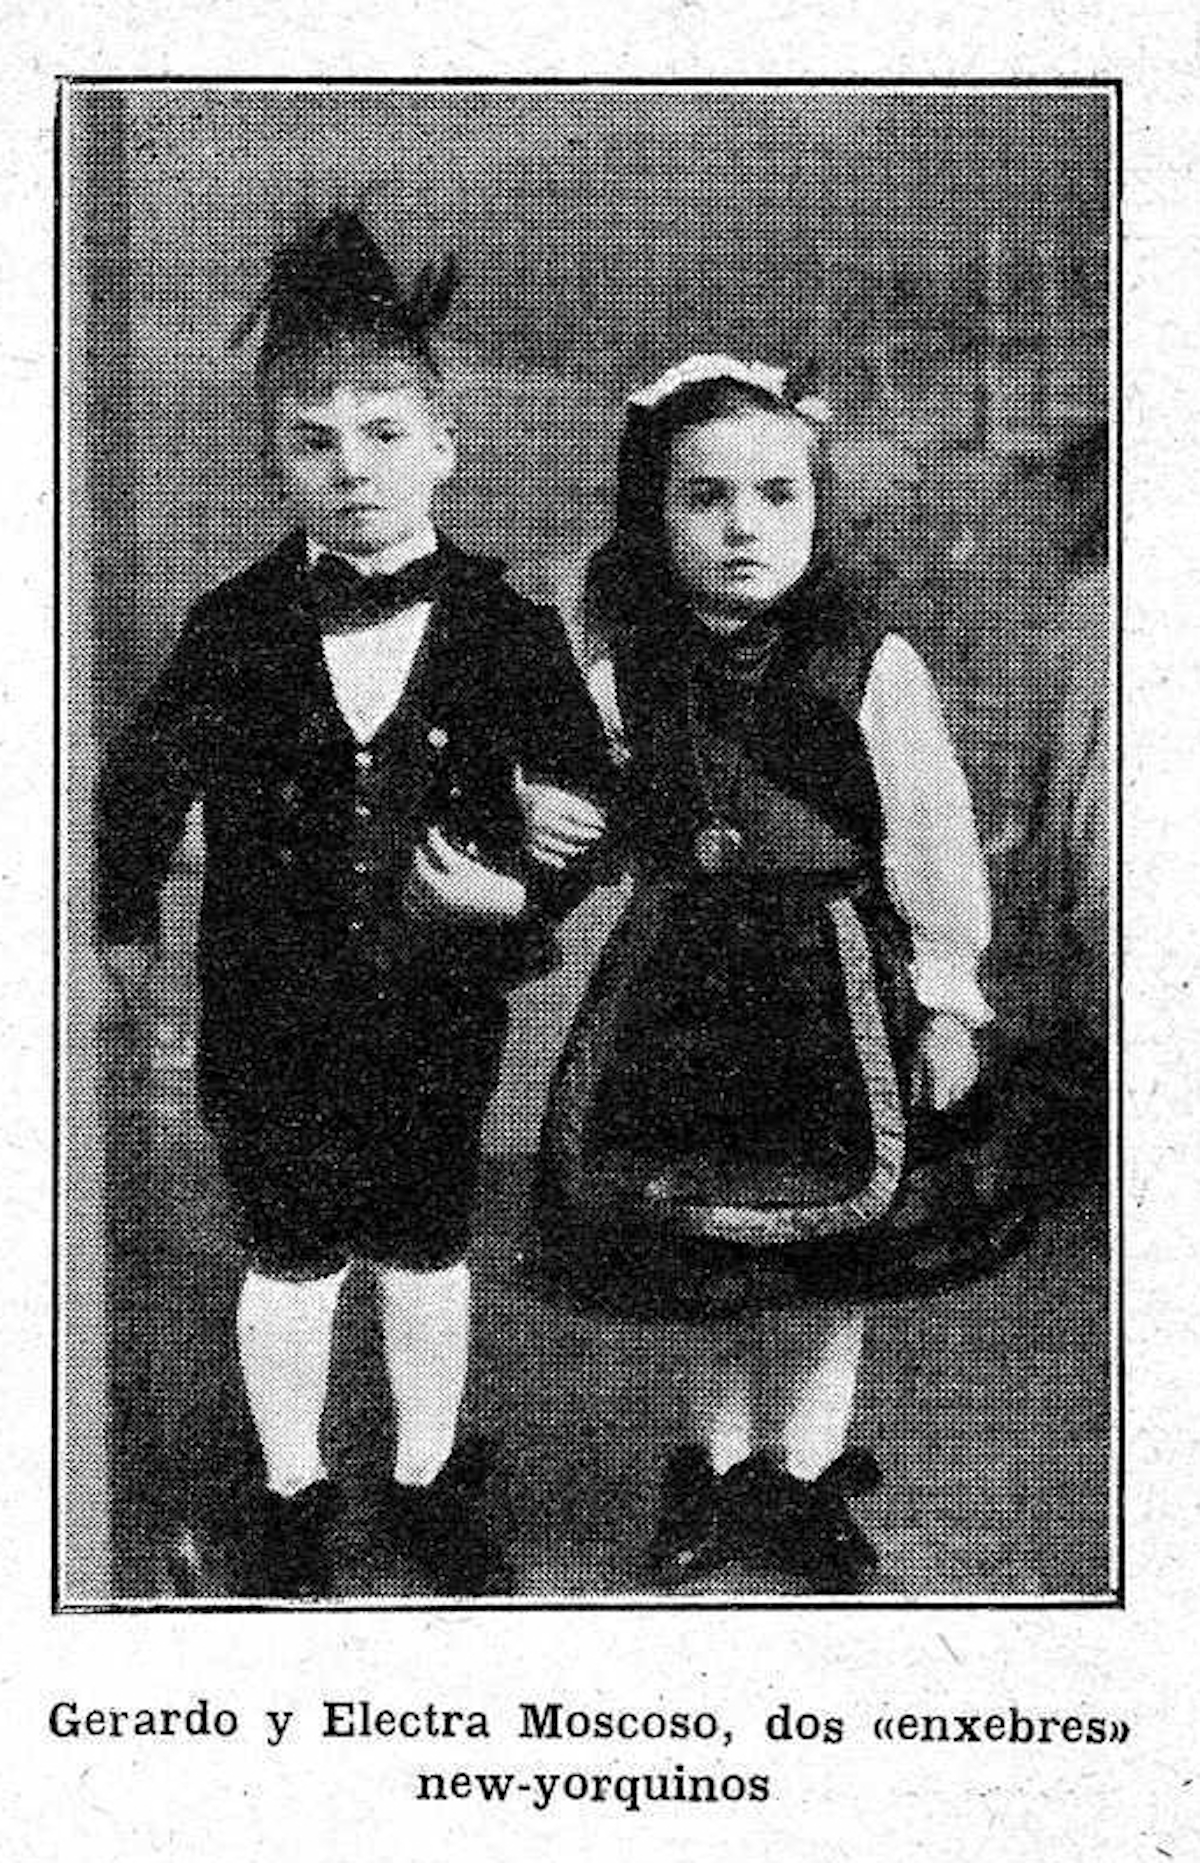 Nenos “enxebres” en Nova York  (Vida gallega, maio 1910)